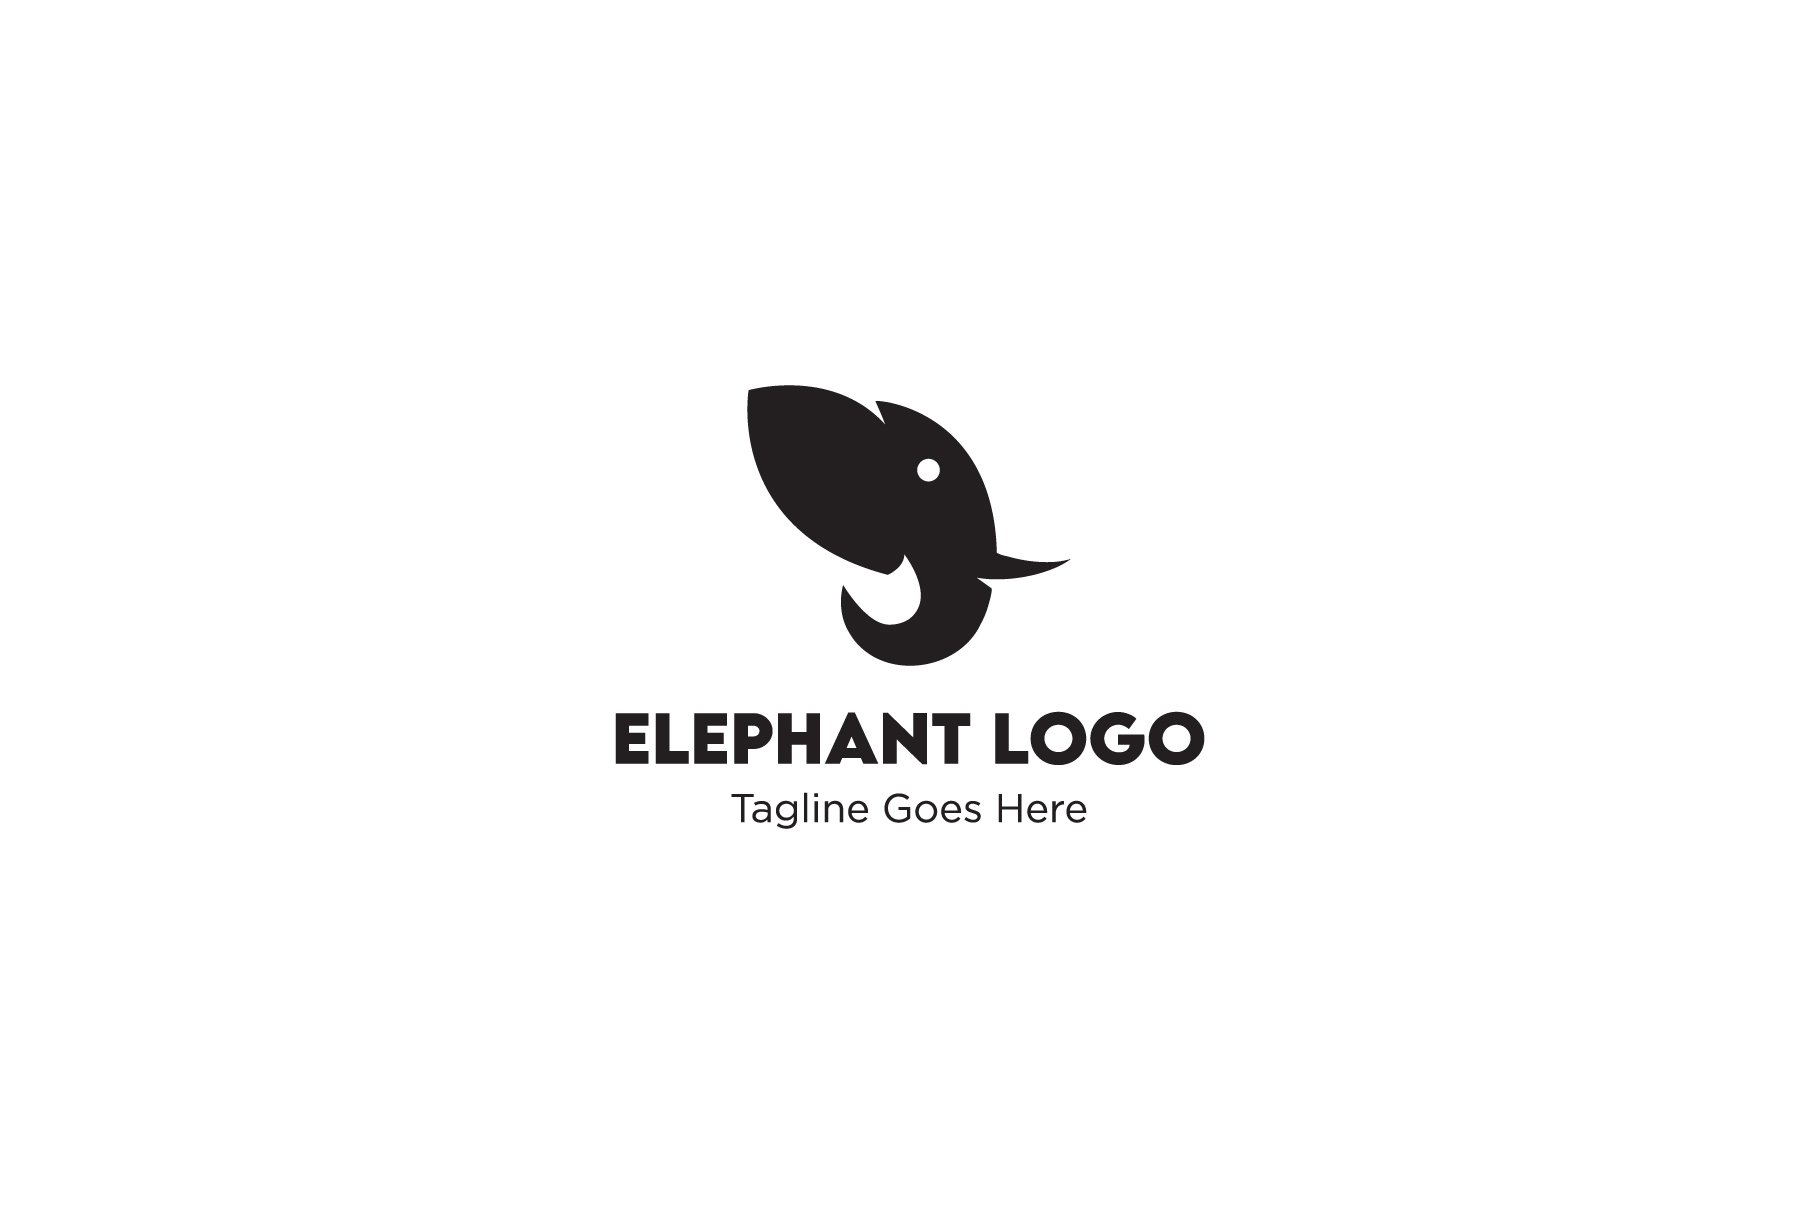 Elephant logo mark cover image.